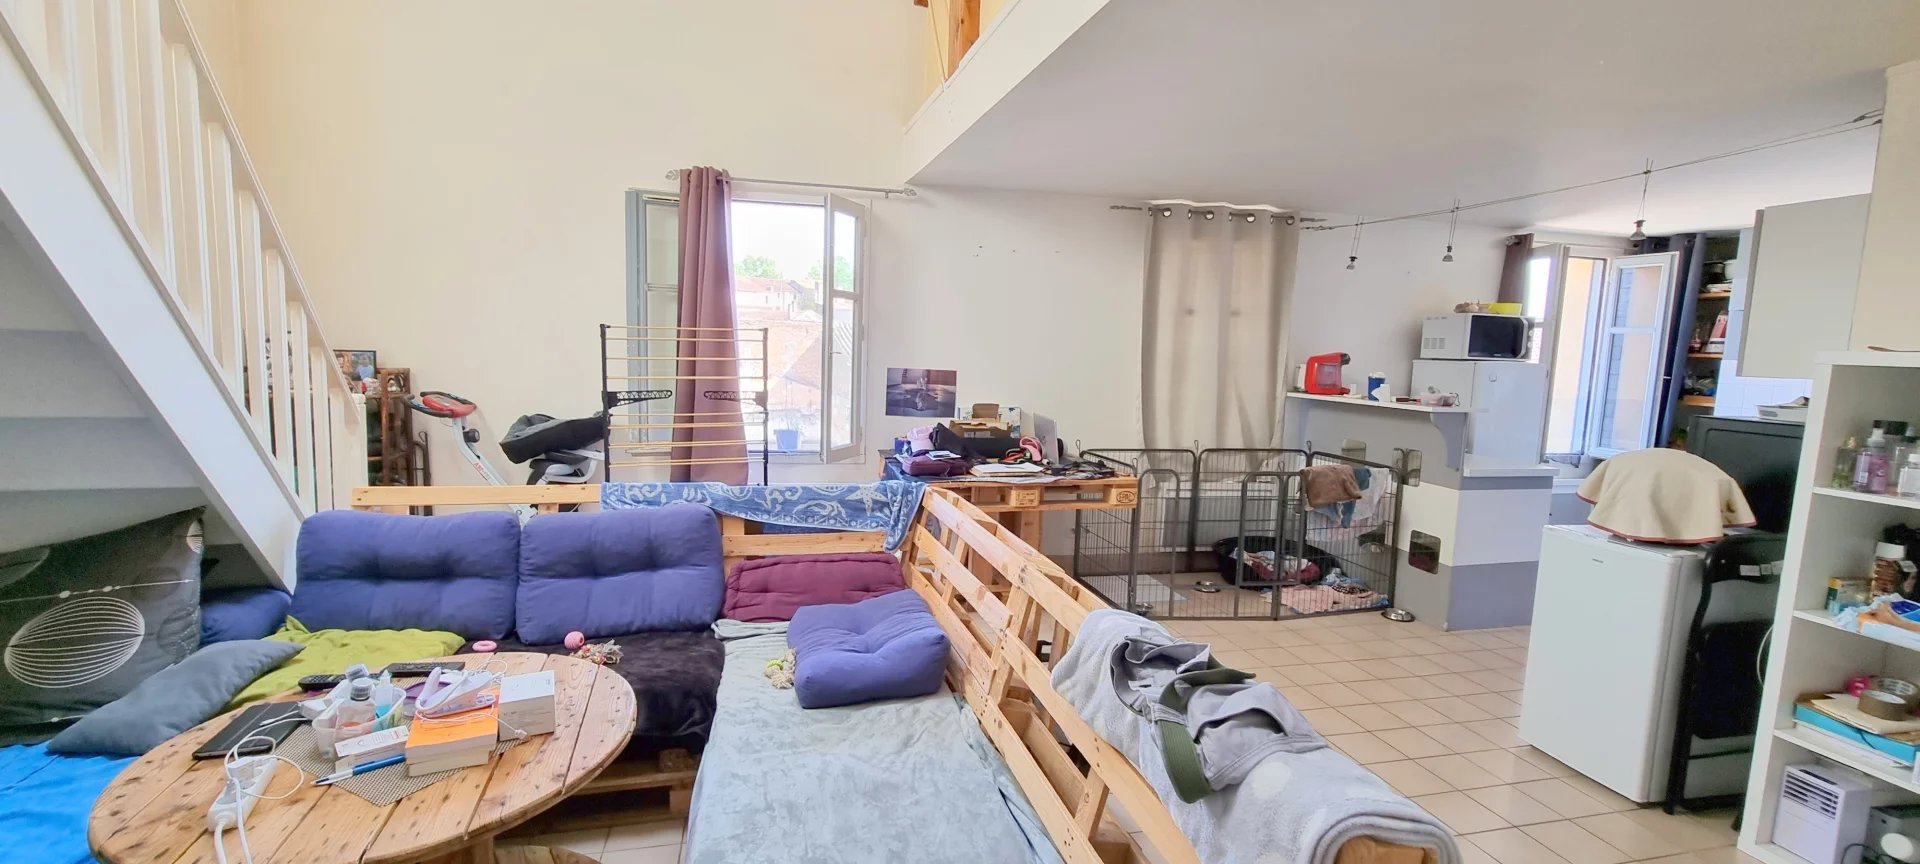 CENTRE VILLE appartement T4 Duplex loué 523.23 € / mois